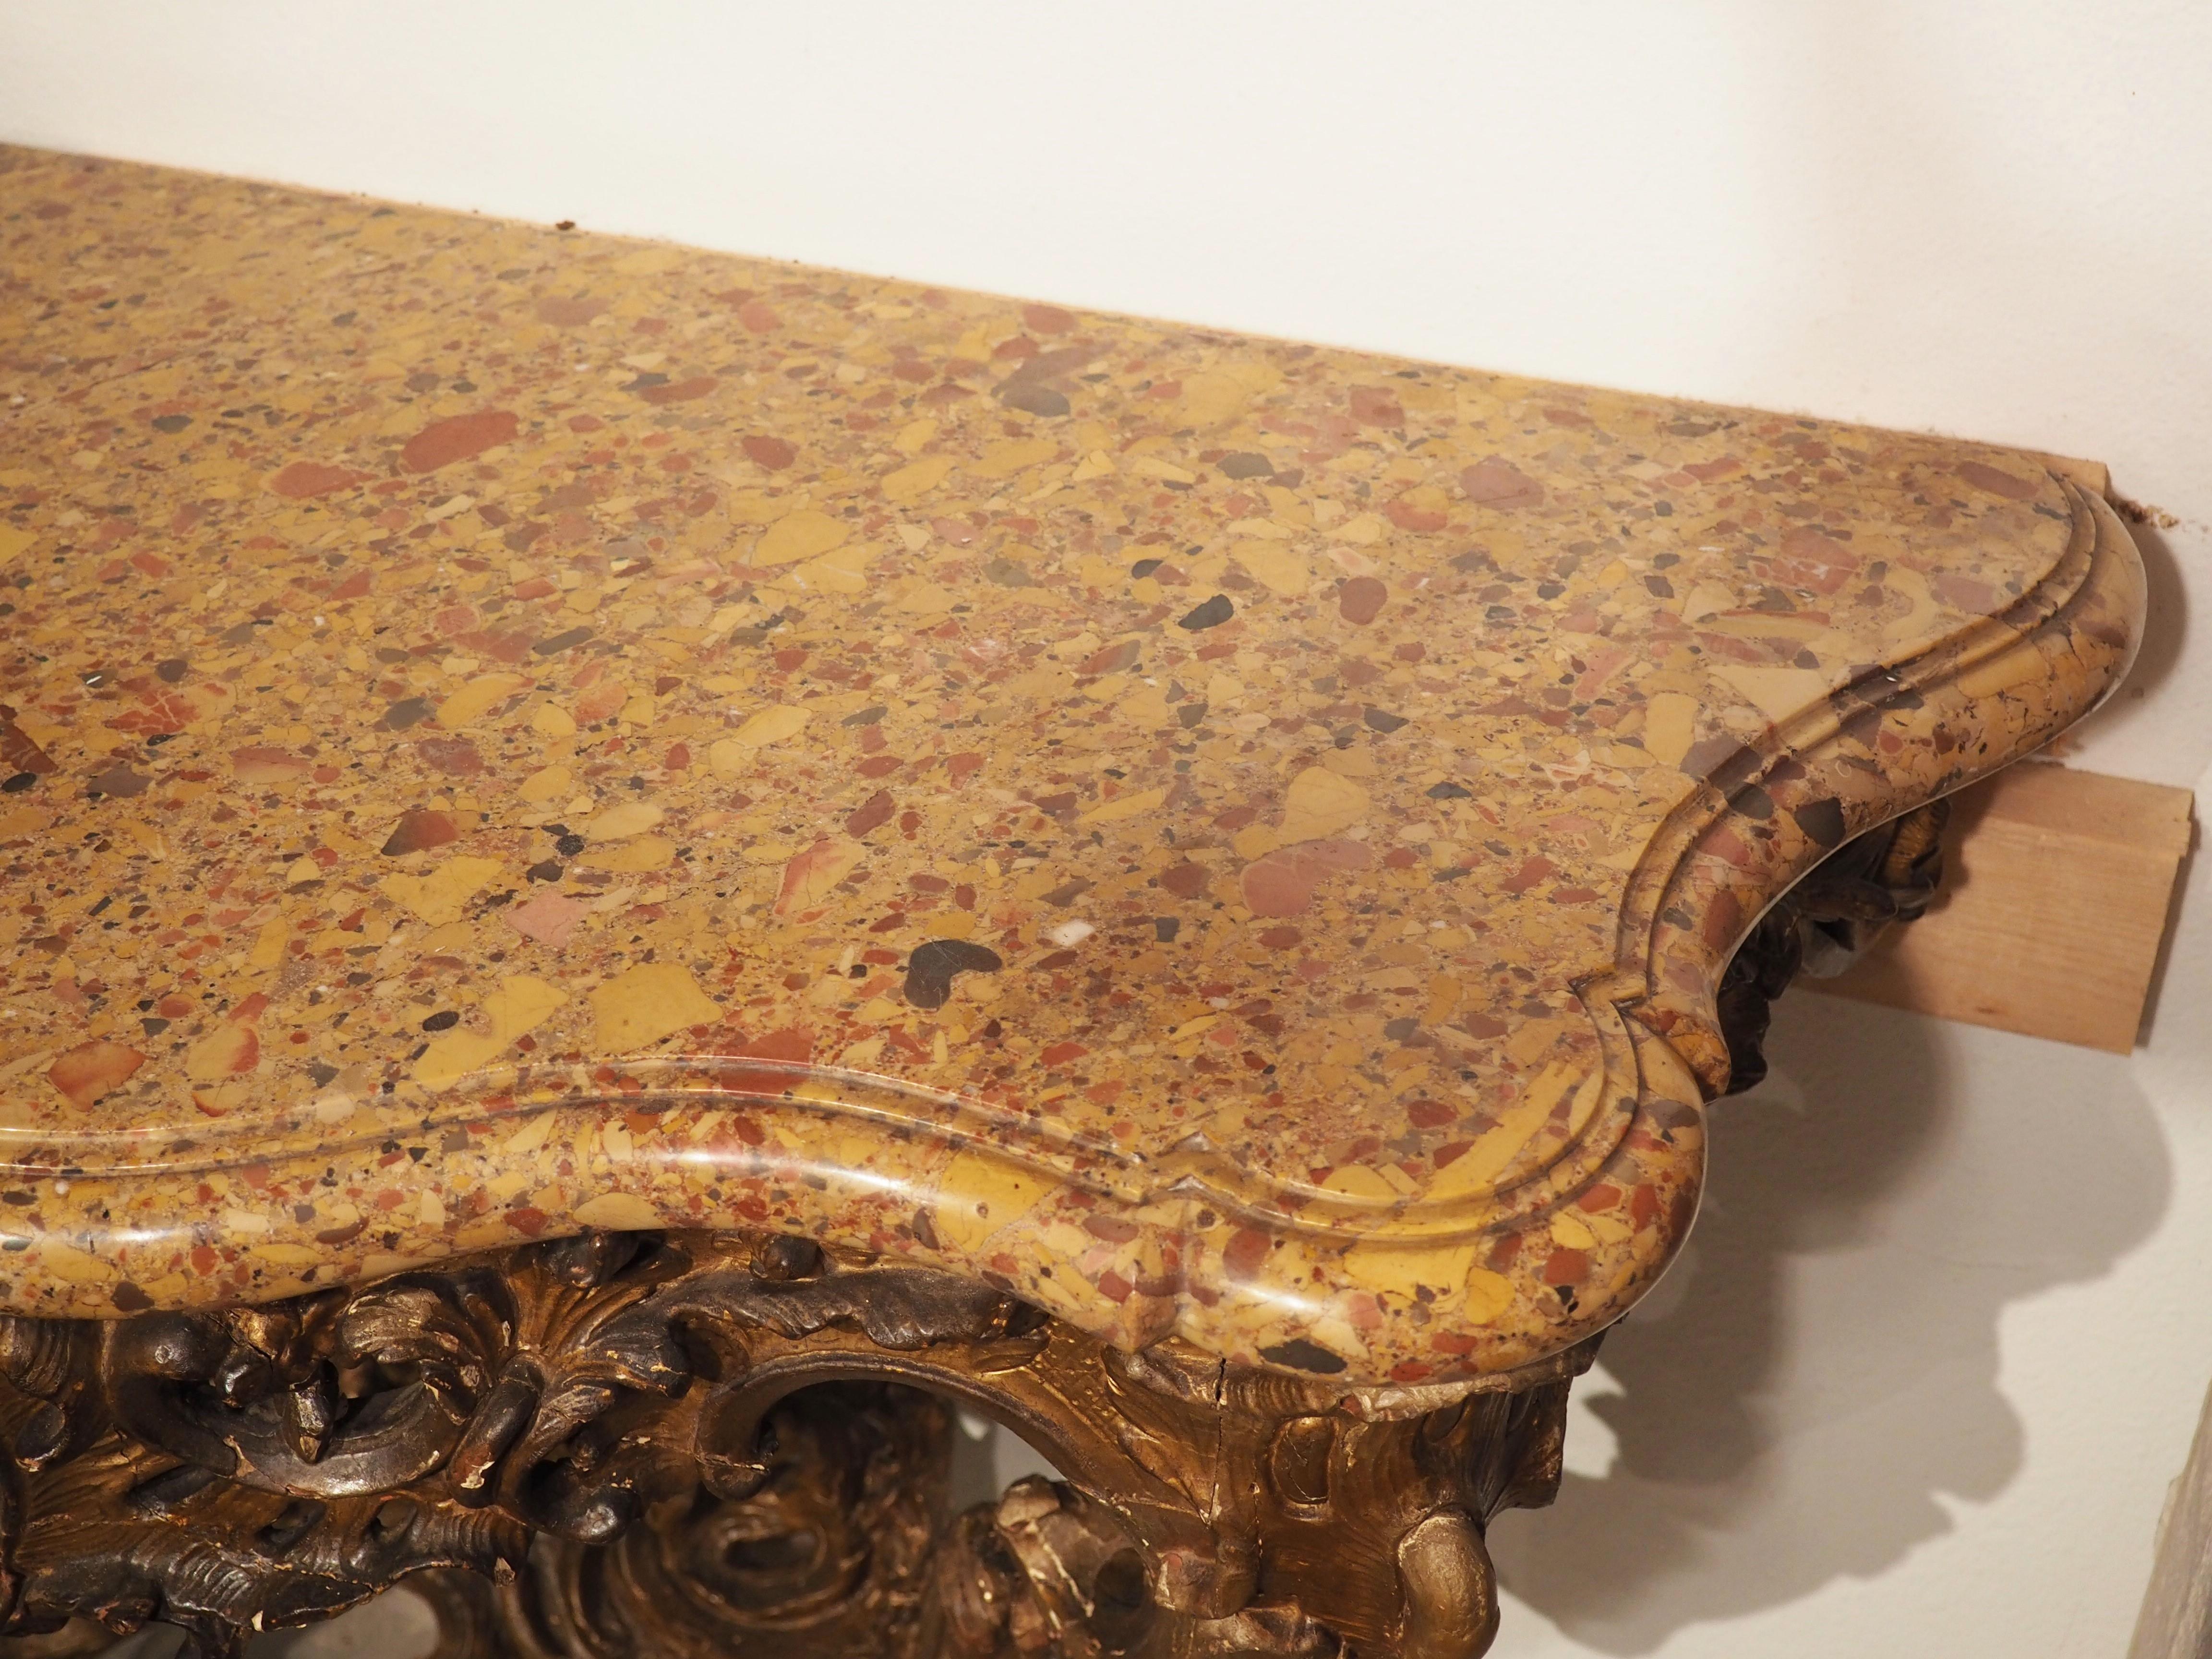 Les meubles fabriqués à l'époque de Louis XV ont été largement influencés par les styles des périodes précédentes. Entre 1730 et 1750, les menusiers, ou ébénistes français, se sont orientés vers la création d'objets plus extravagants, avec un décor